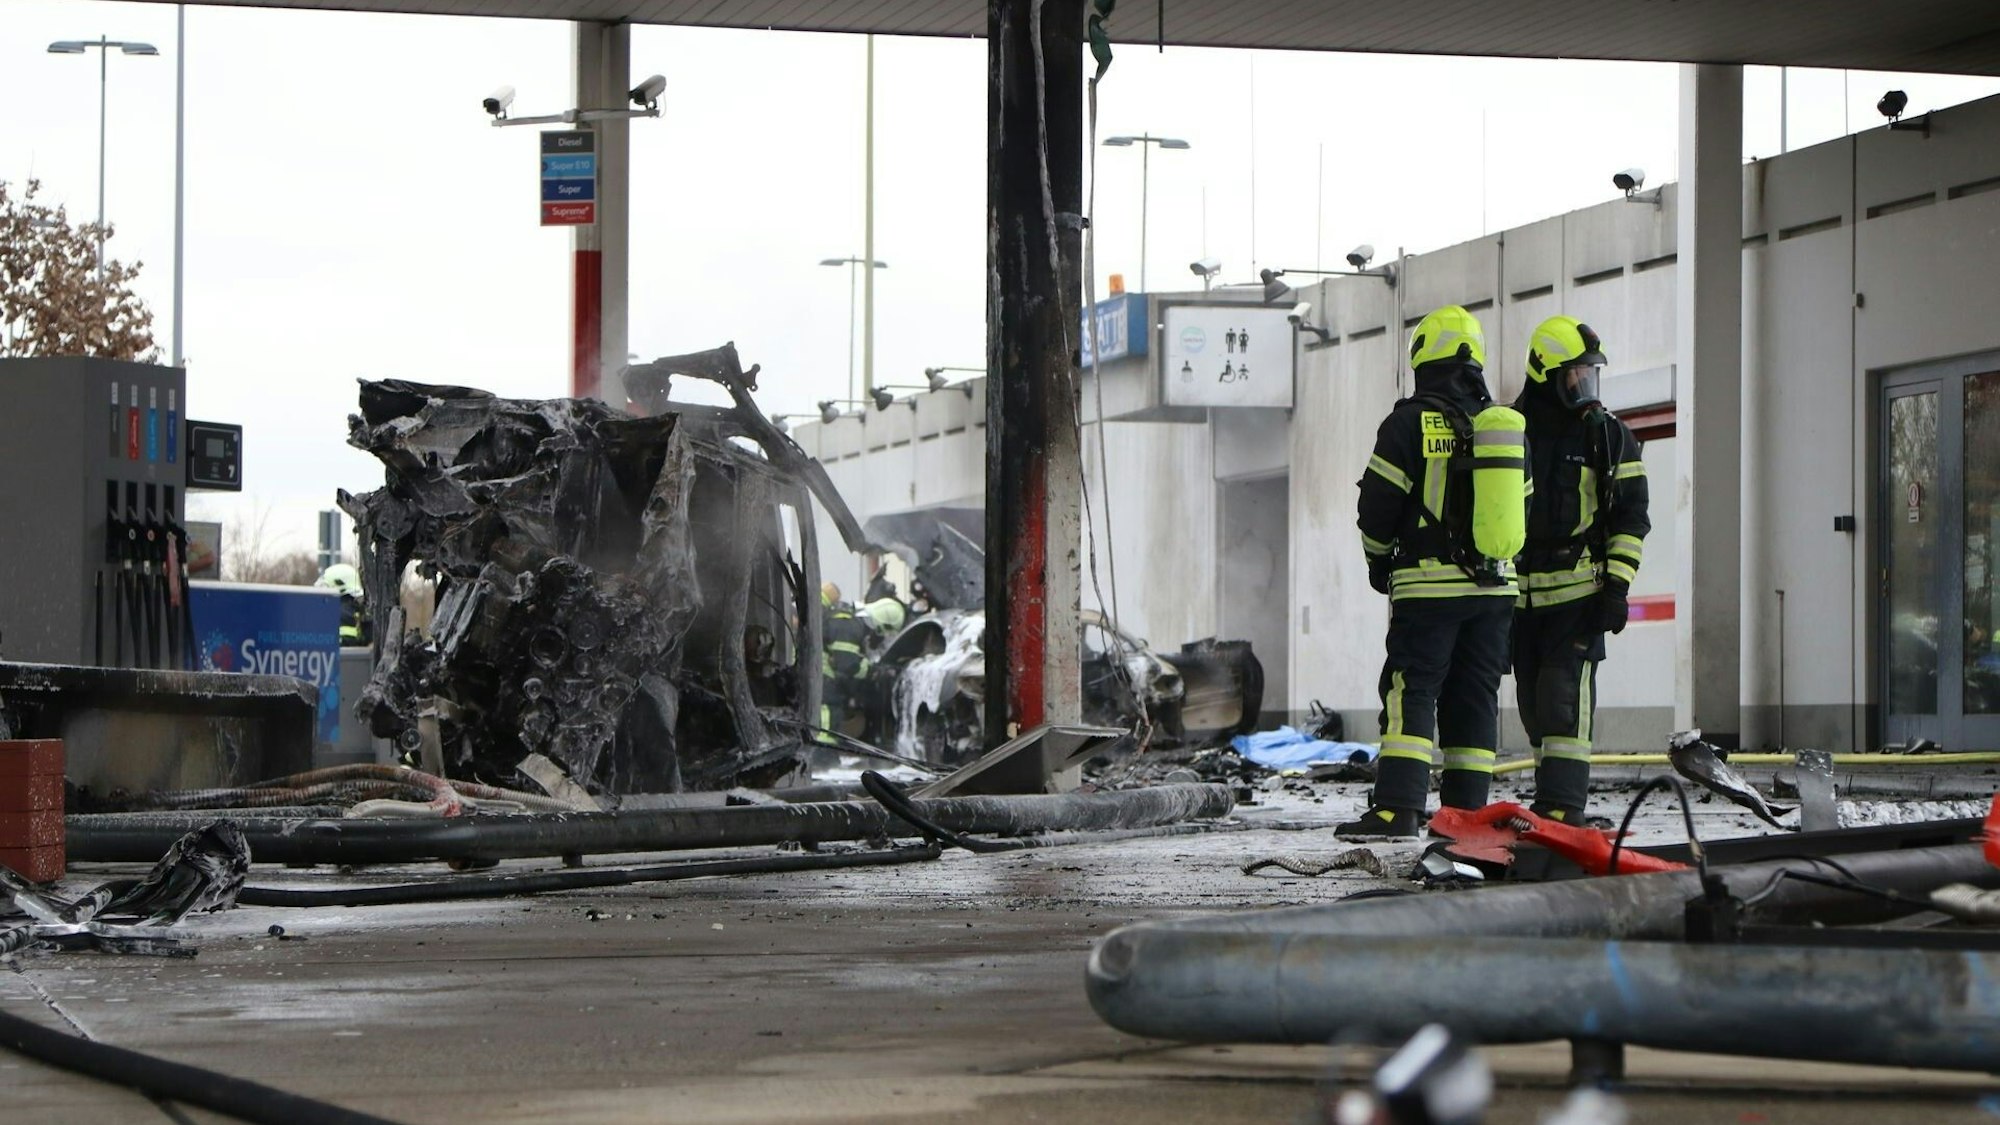 Zwei Feuerwehrleute haben das Feuer an der Tankstelle an der AutobahnraststätteLangen-Bergheim am 17. Januar 2022 gelöscht. Auf dem Bild sieht man einen ausgebrannten PKW.